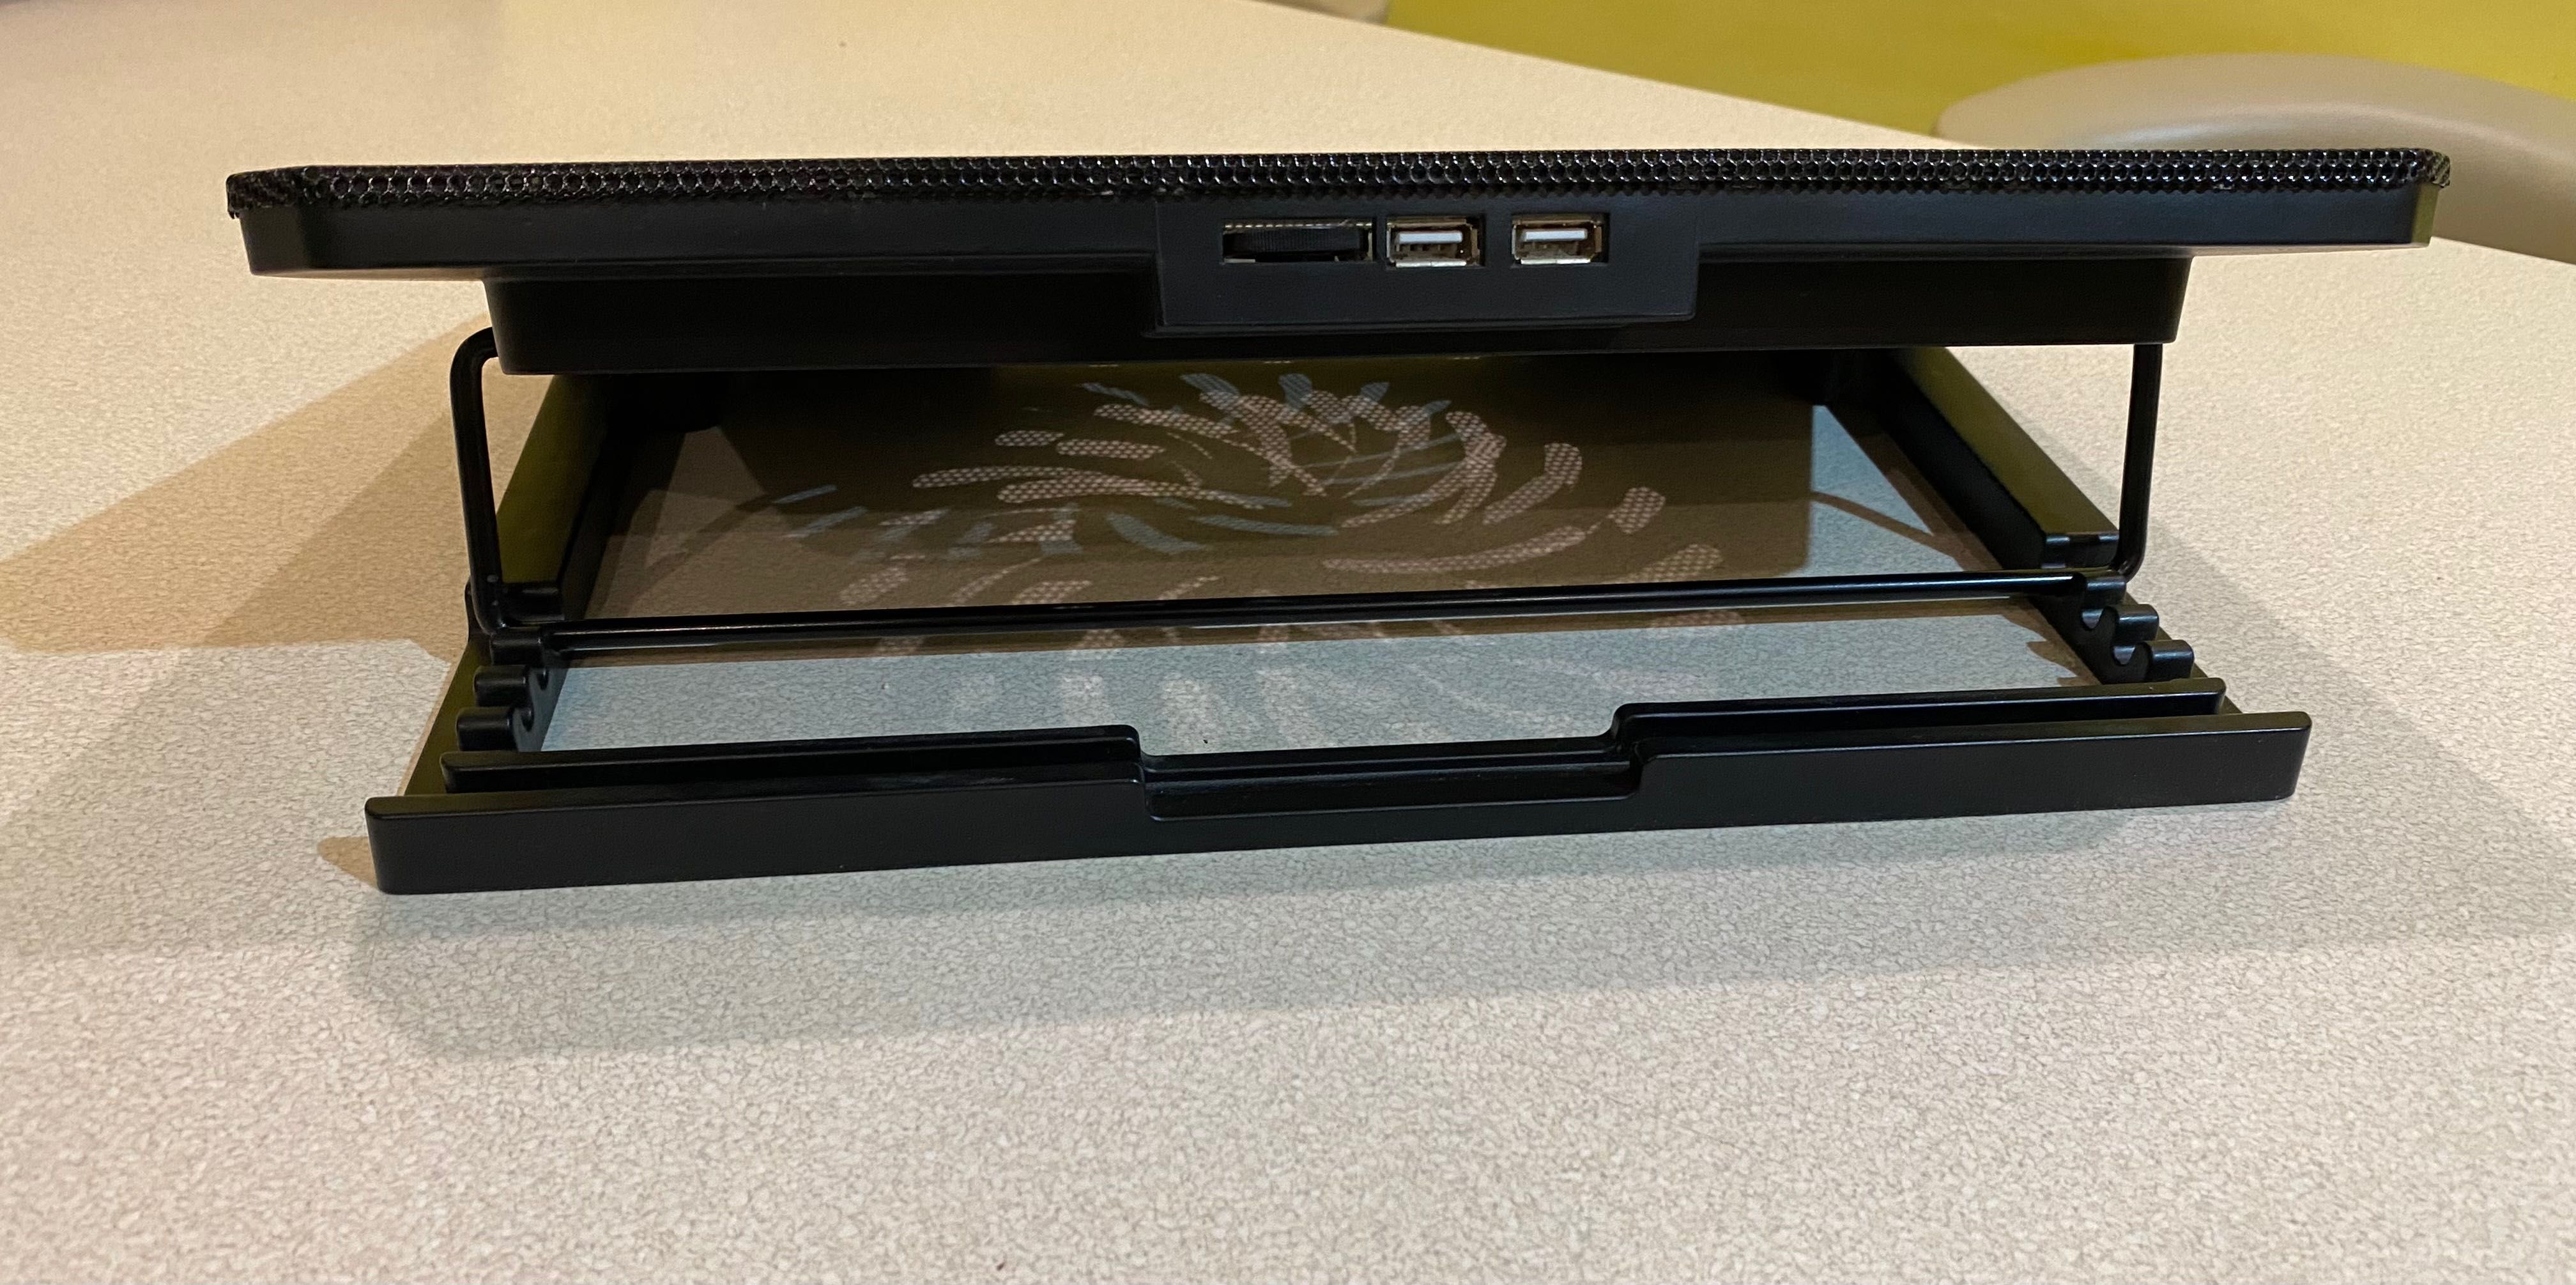 Podstawka chłodząca pod laptopa